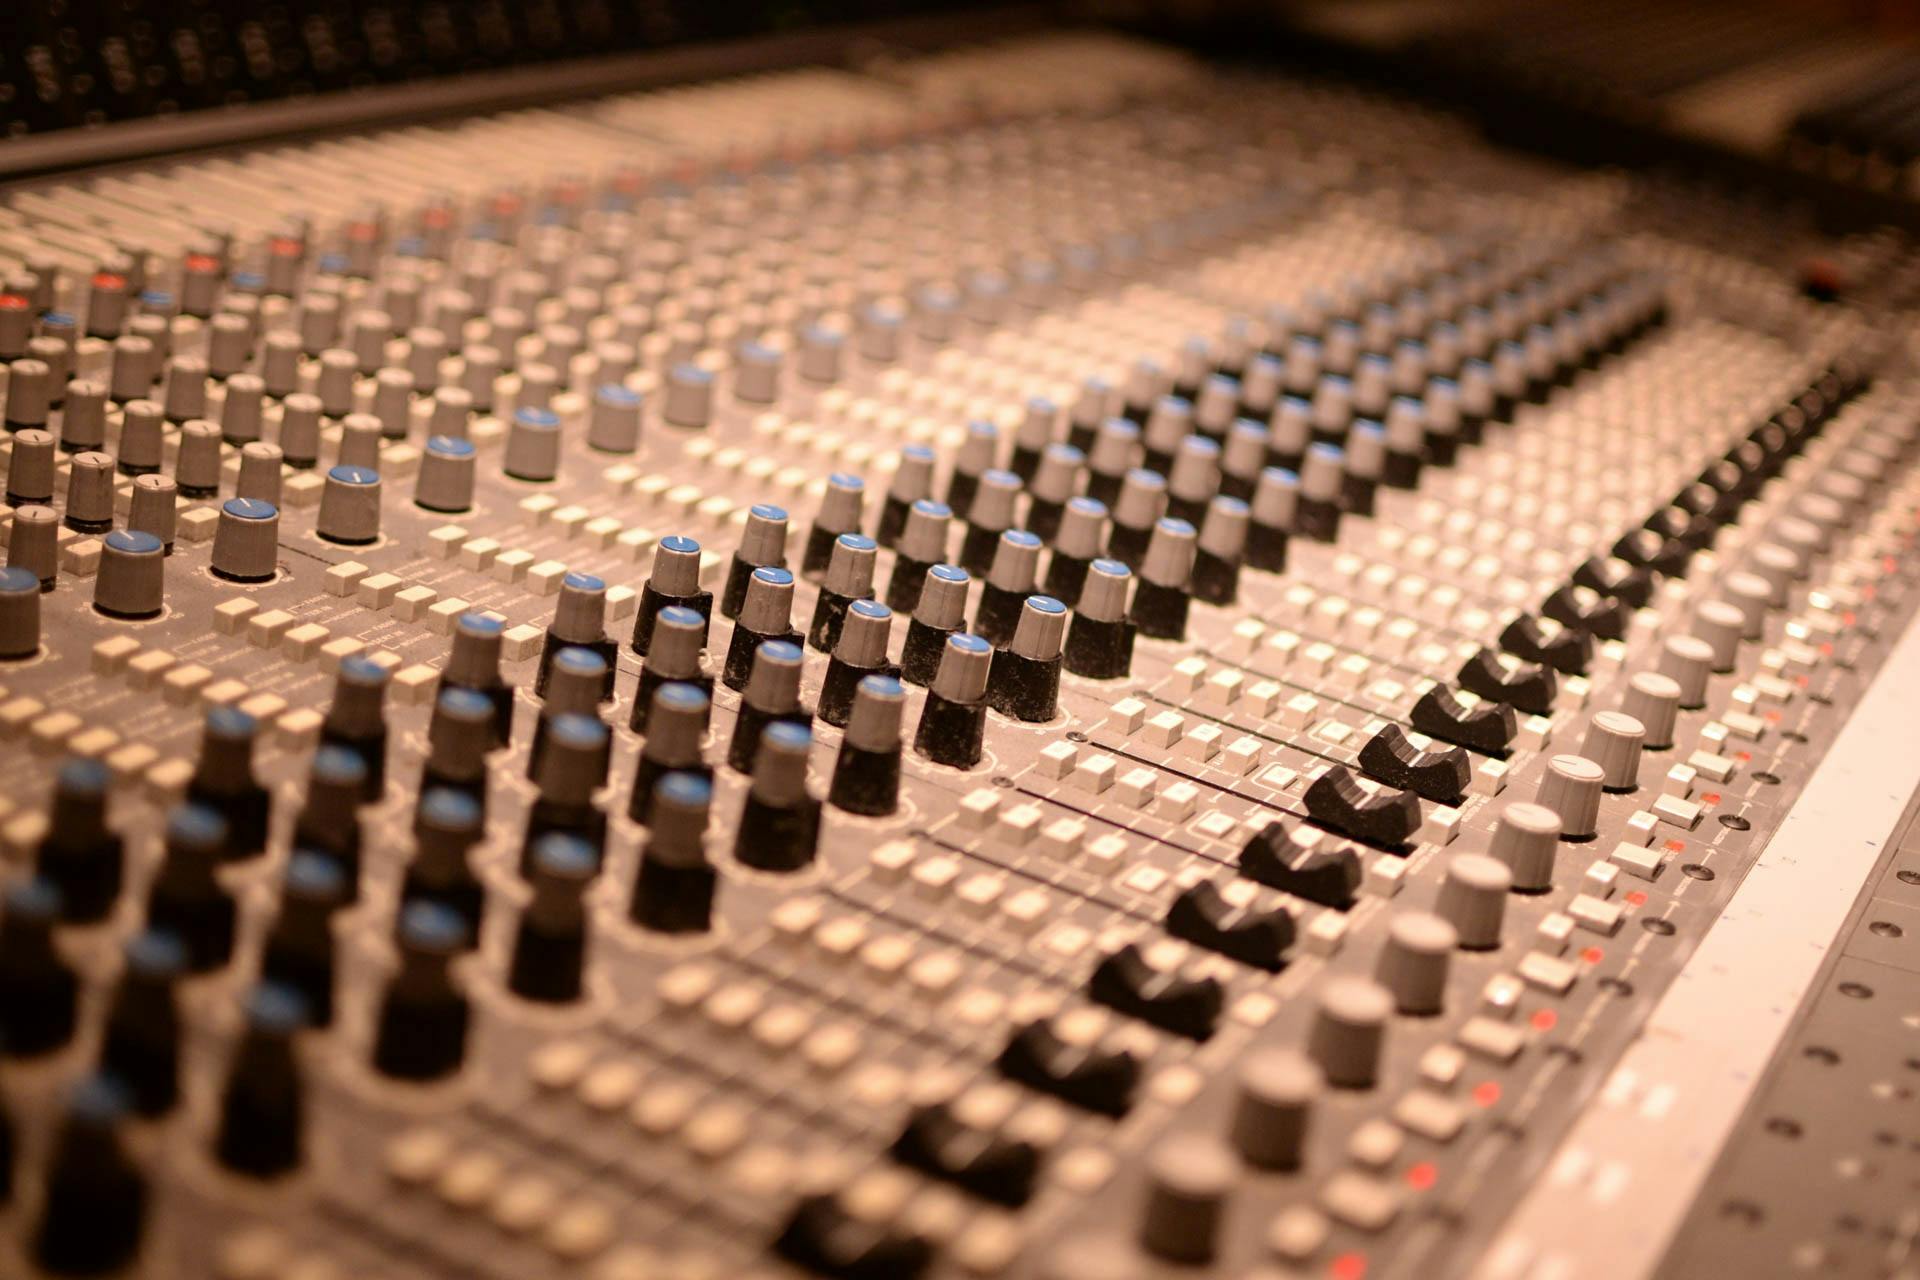 Recording Studio Music Pro - Free photo on Pixabay - Pixabay